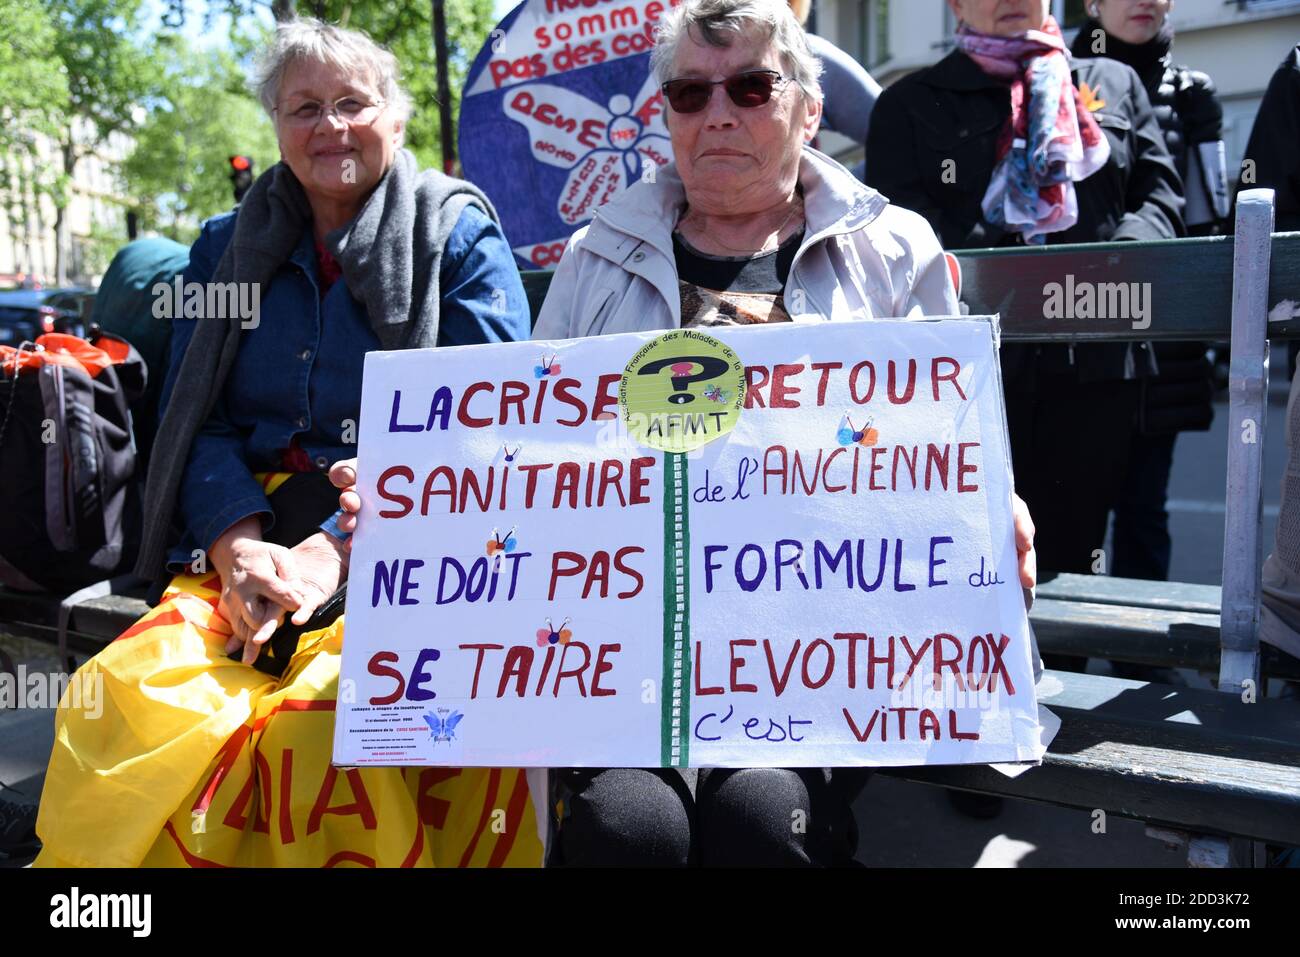 Manifestation Levothyrox devant Ministere de la Sante a Paris, France ...